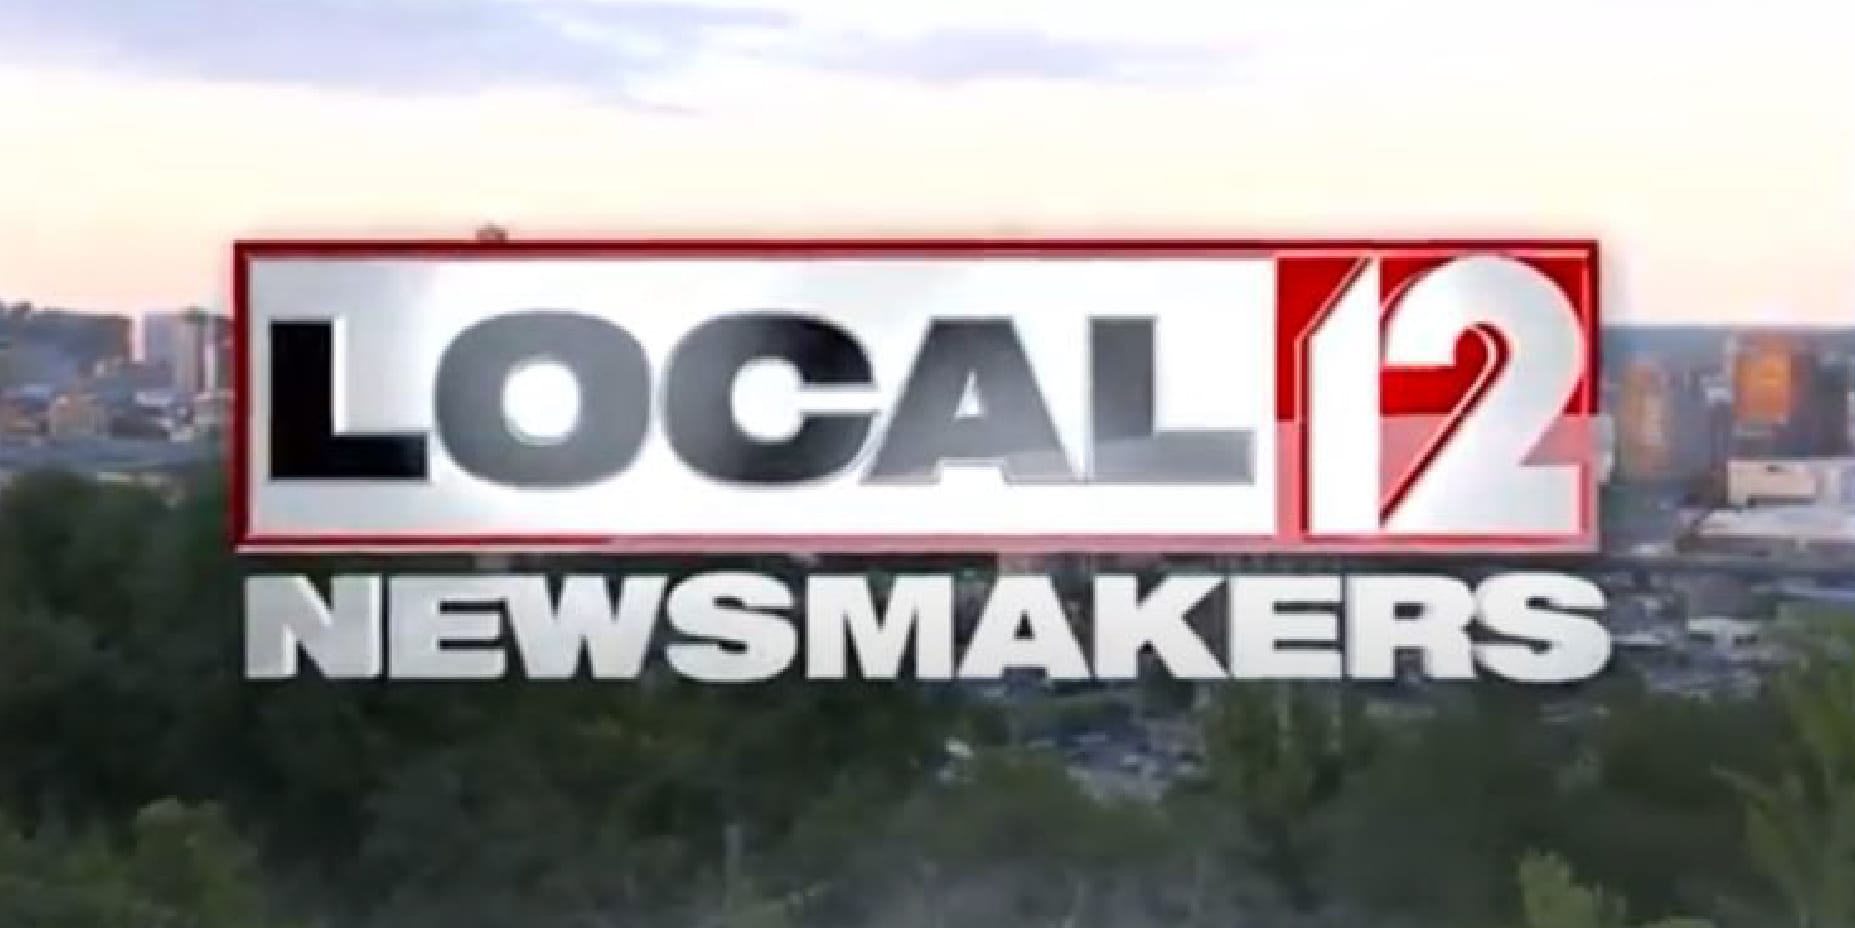 Local 12 Newsmakers - Exhibit Website